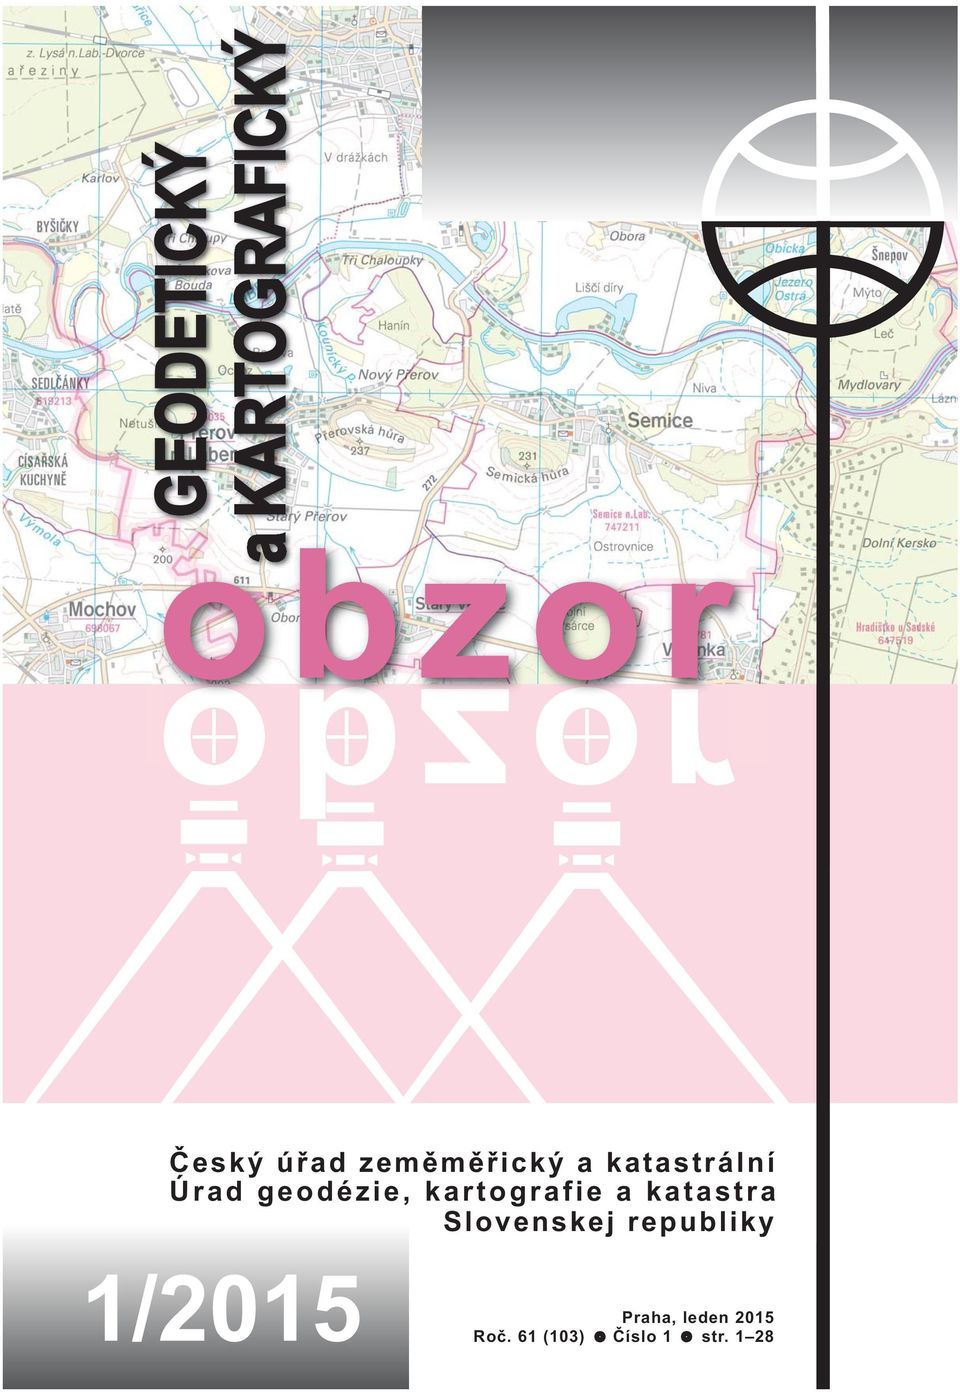 kartografie a katastra Slovenskej republiky